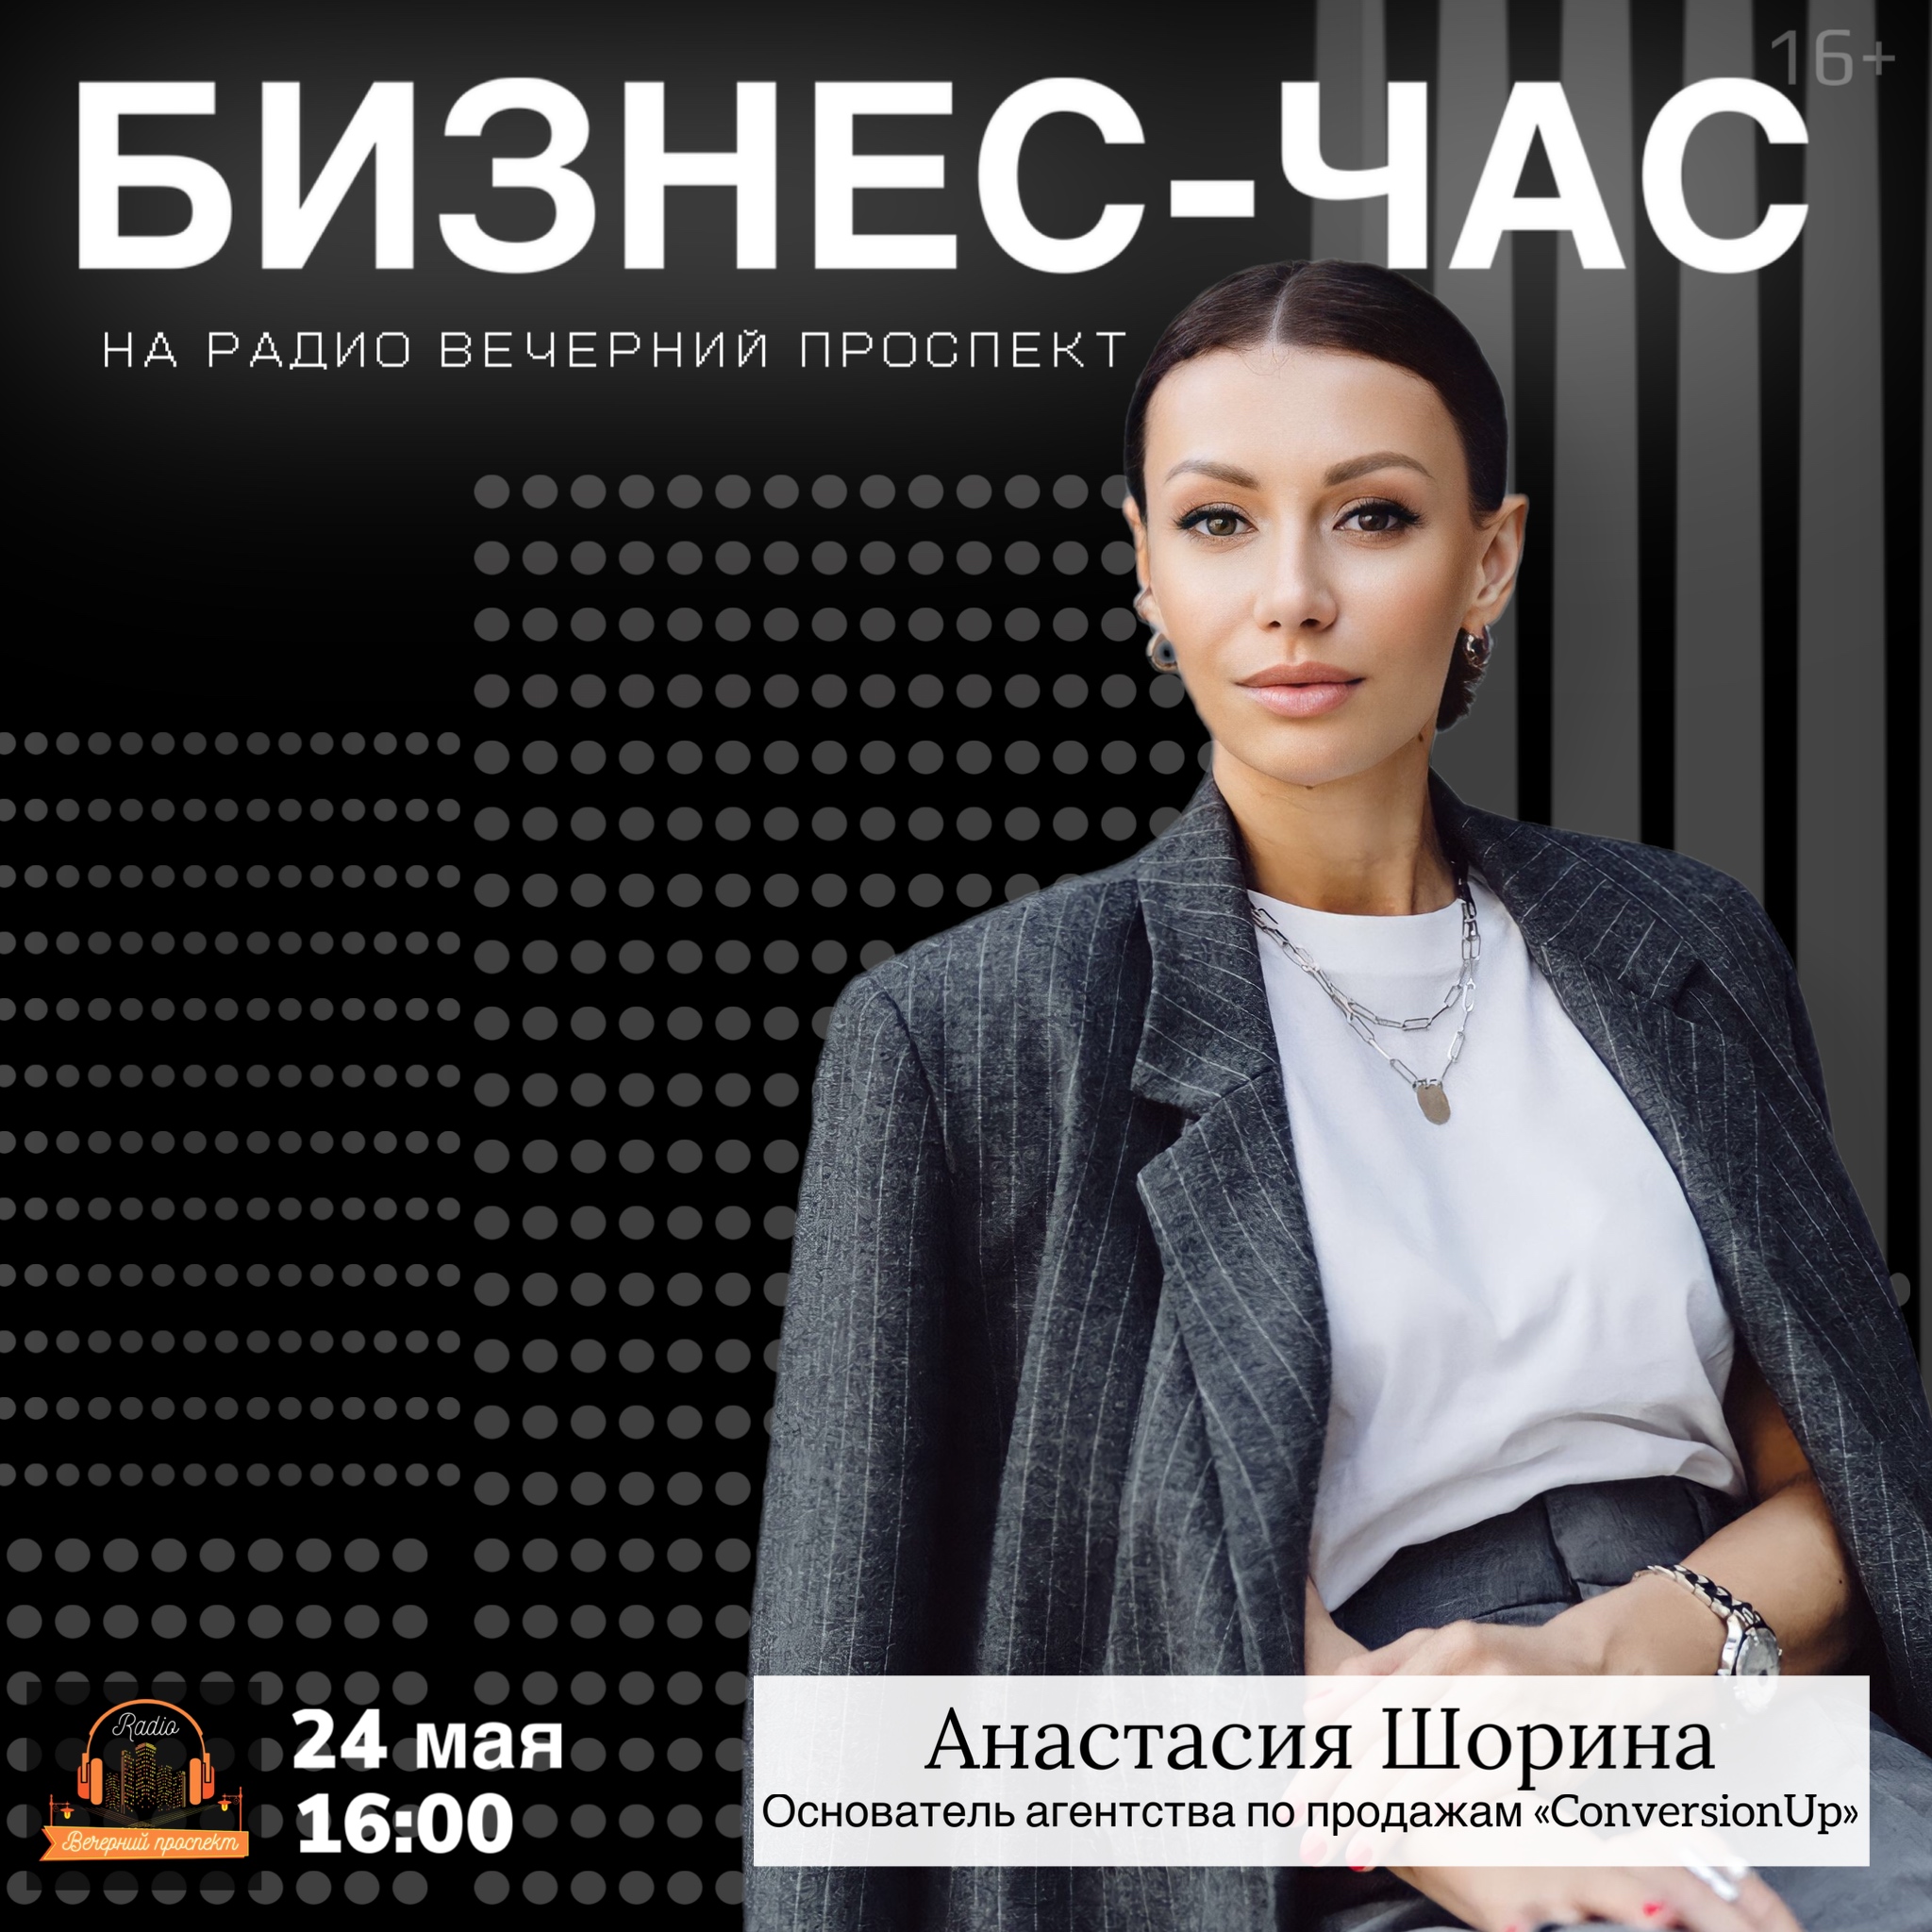 🎧 24 мая с 16:00 в эфире программы «Бизнес-час» основатель агентства по продажам «ConversionUp» – Анастасия Шорина.